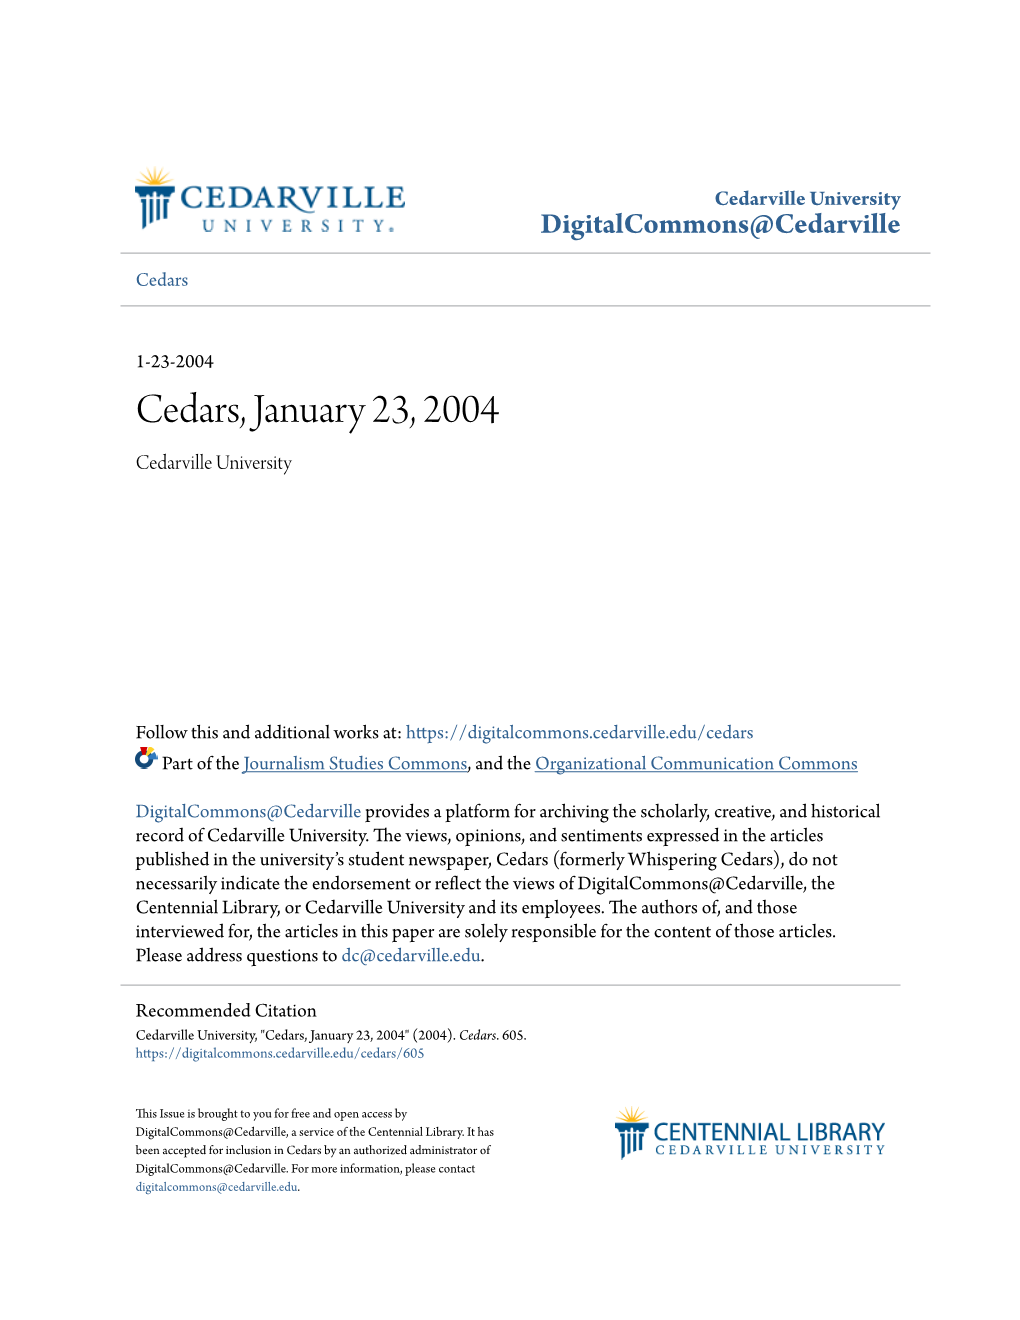 Cedars, January 23, 2004 Cedarville University